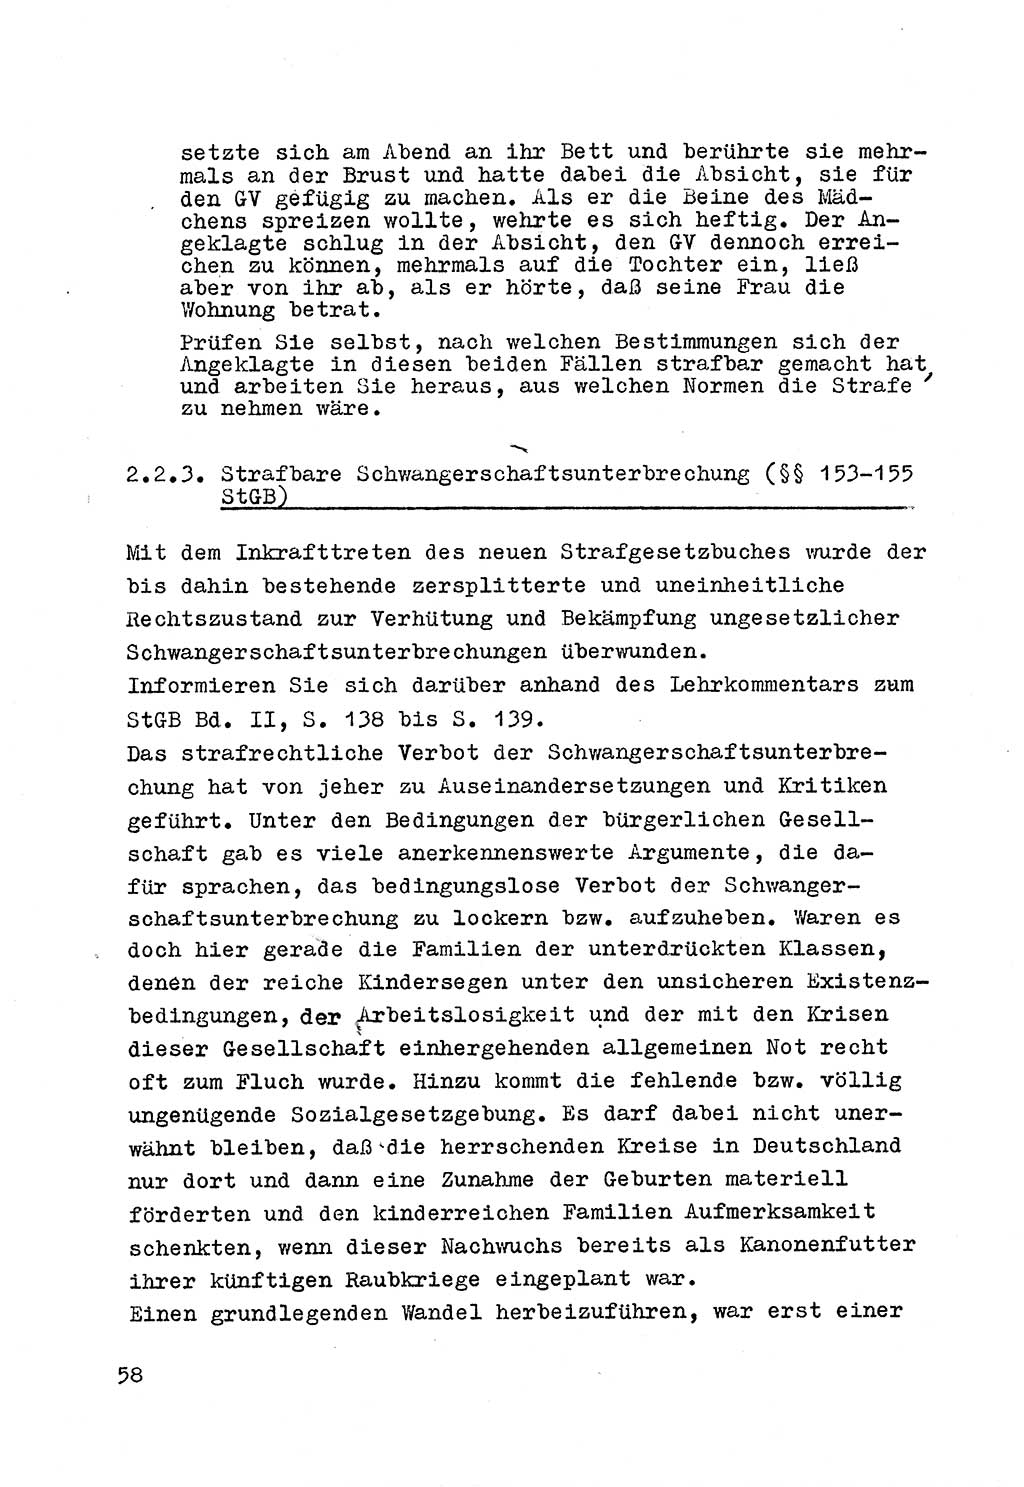 Strafrecht der DDR (Deutsche Demokratische Republik), Besonderer Teil, Lehrmaterial, Heft 4 1969, Seite 58 (Strafr. DDR BT Lehrmat. H. 4 1969, S. 58)